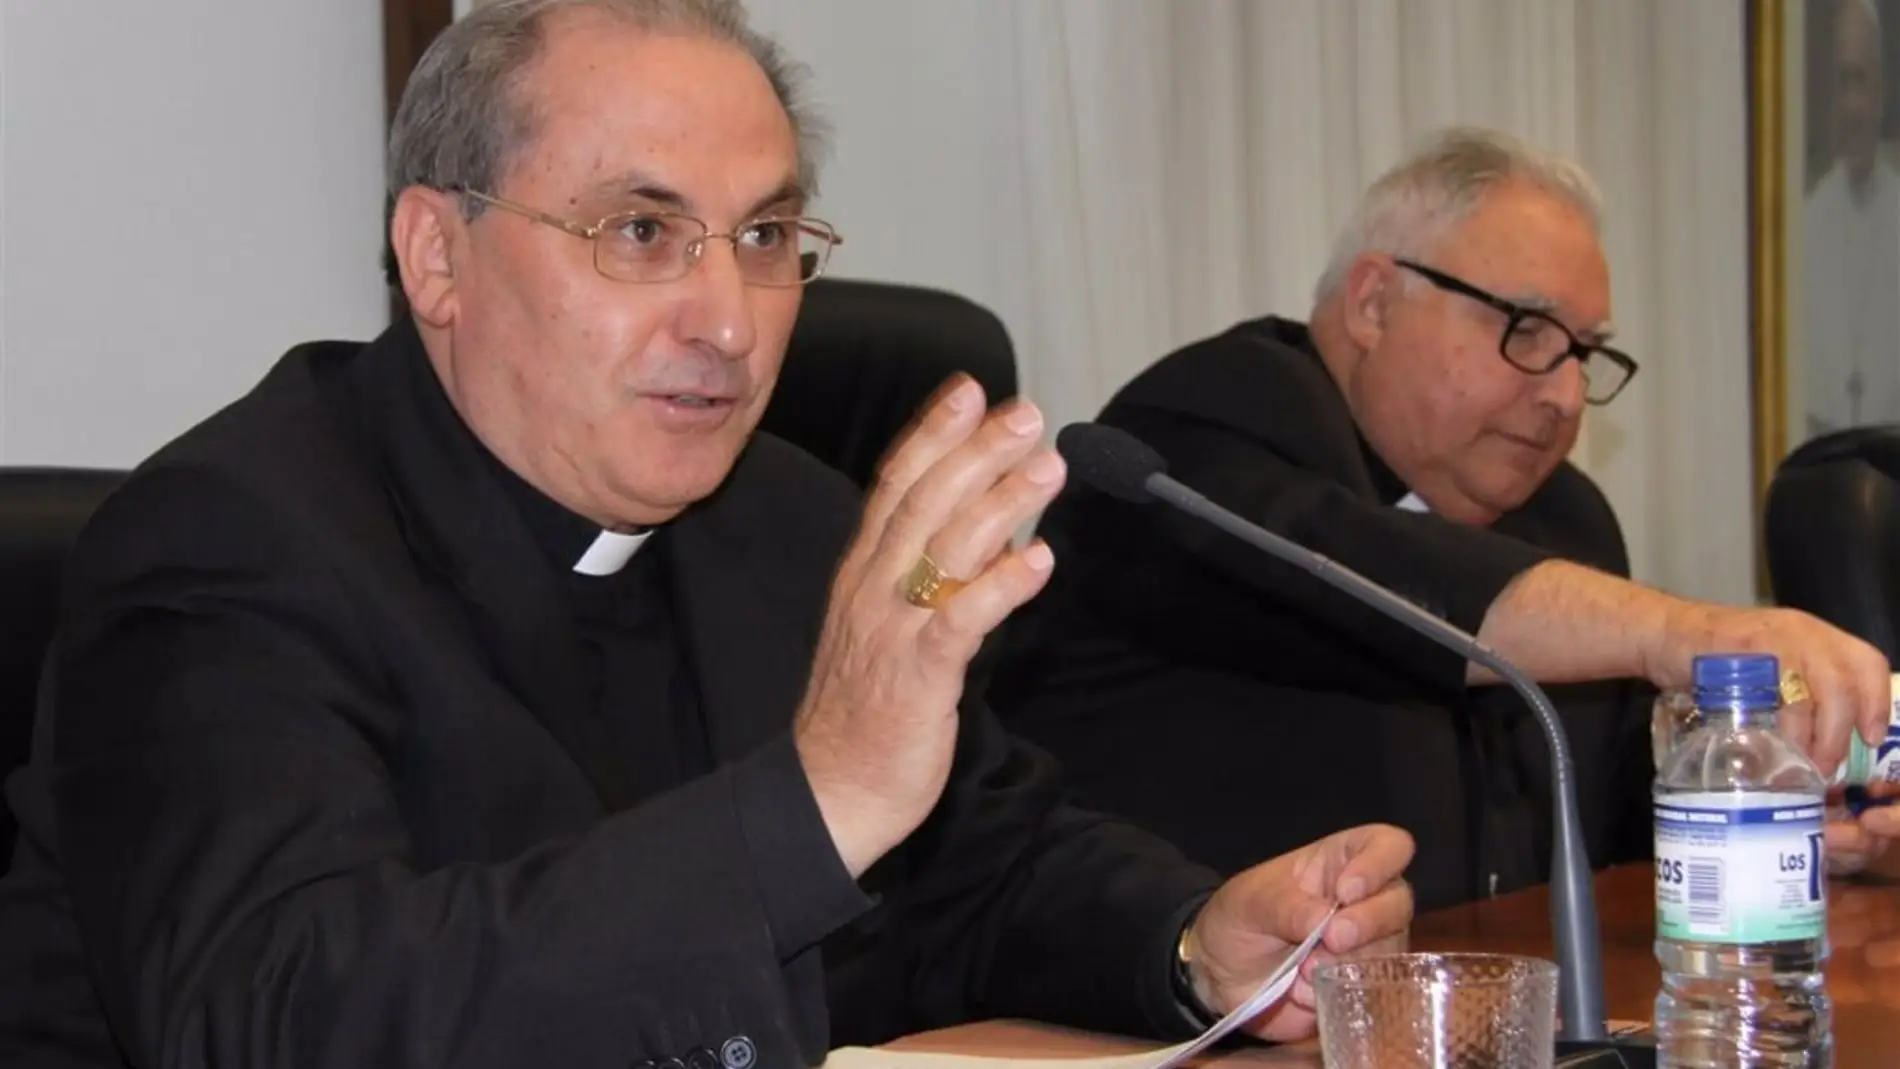 El Arzobispo de Mérida-Badajoz Celso Morga muestra su "dolor personal" por el caso de Almendralejo